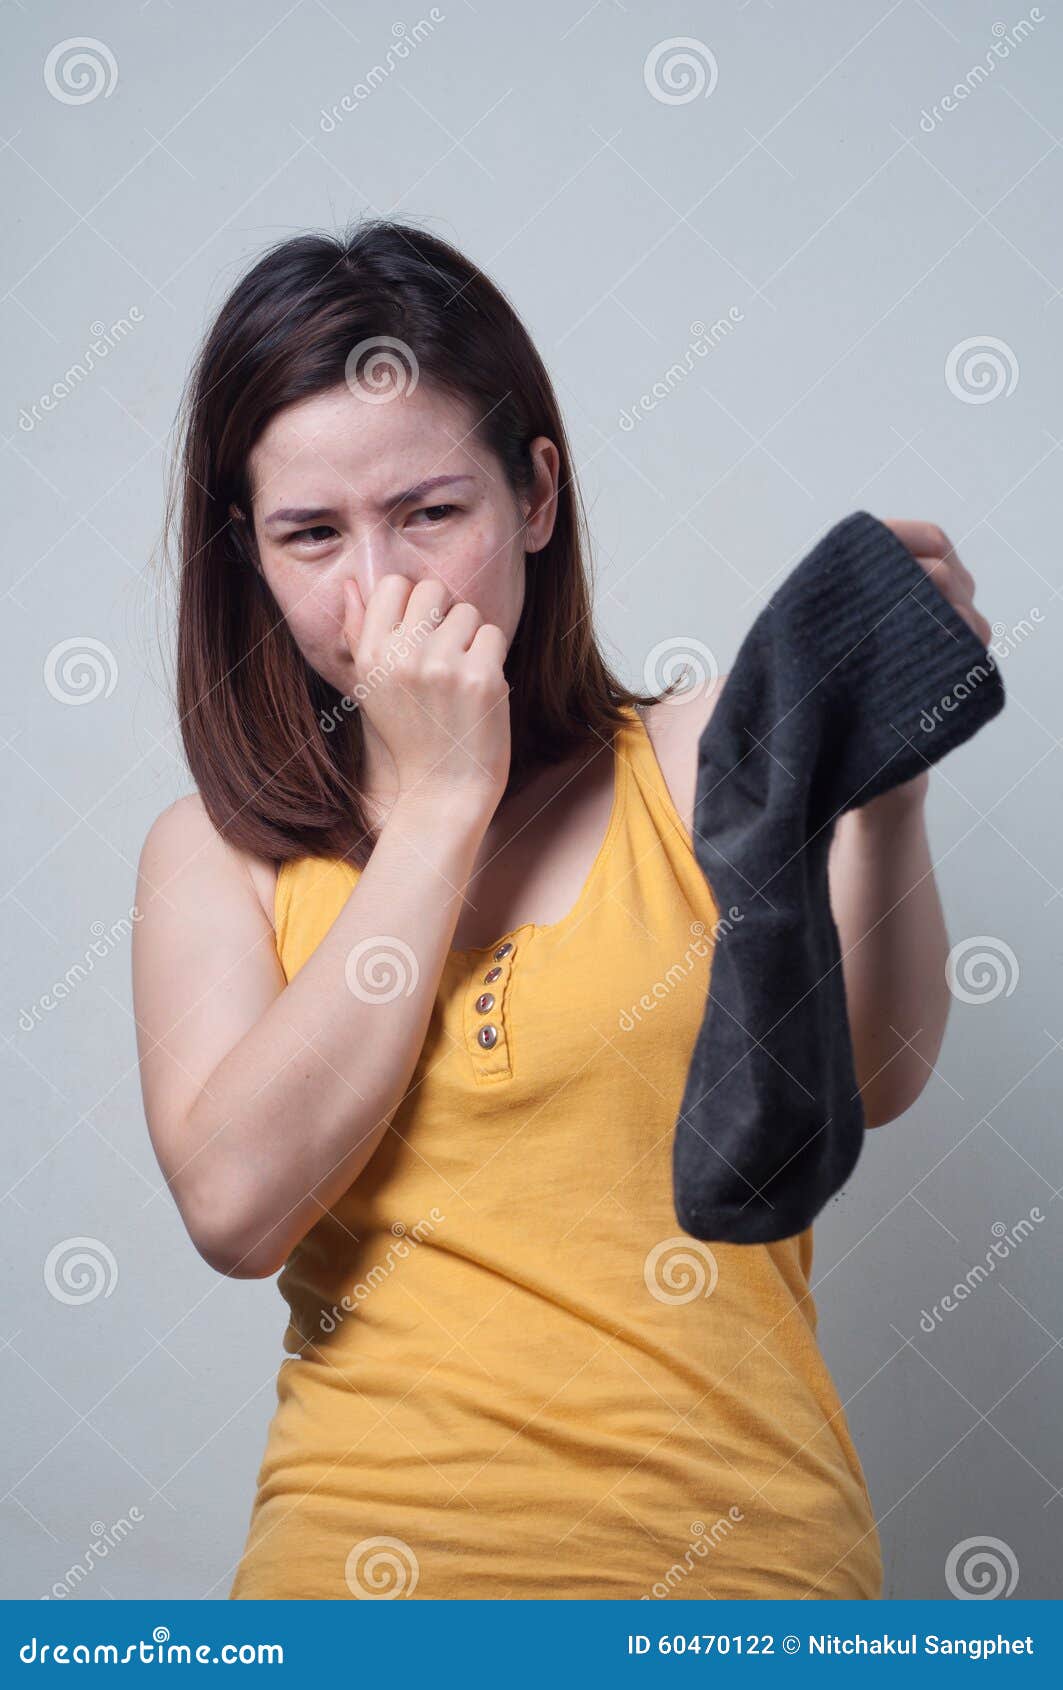 https://thumbs.dreamstime.com/z/portrait-asian-woman-yellow-dress-smelling-socks-foul-beauty-60470122.jpg